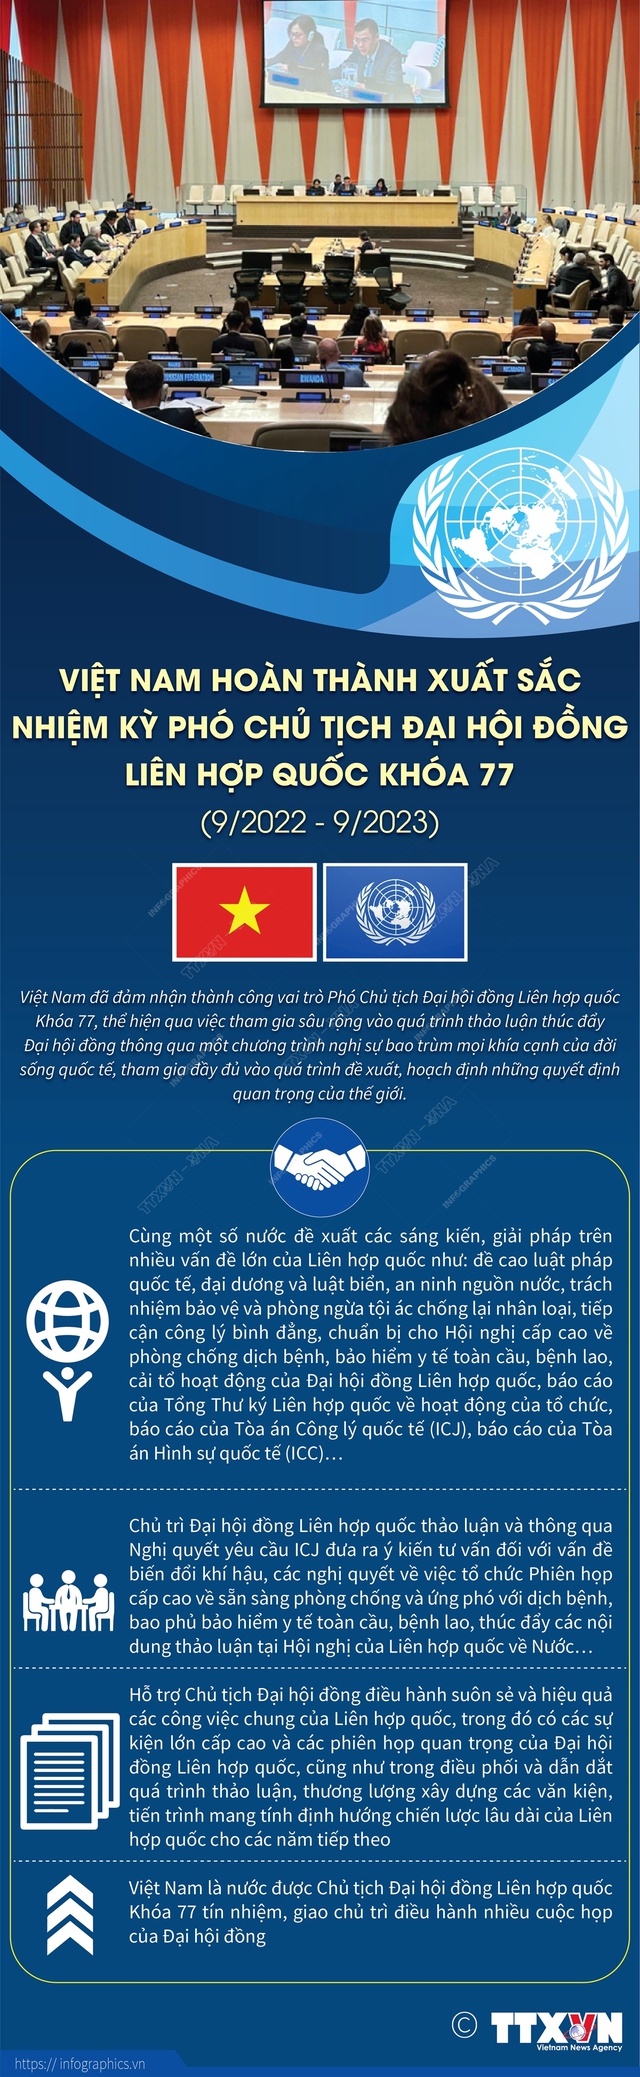 Việt Nam hoàn thành xuất sắc nhiệm kỳ Phó Chủ tịch Đại hội đồng Liên hợp quốc - Ảnh 1.